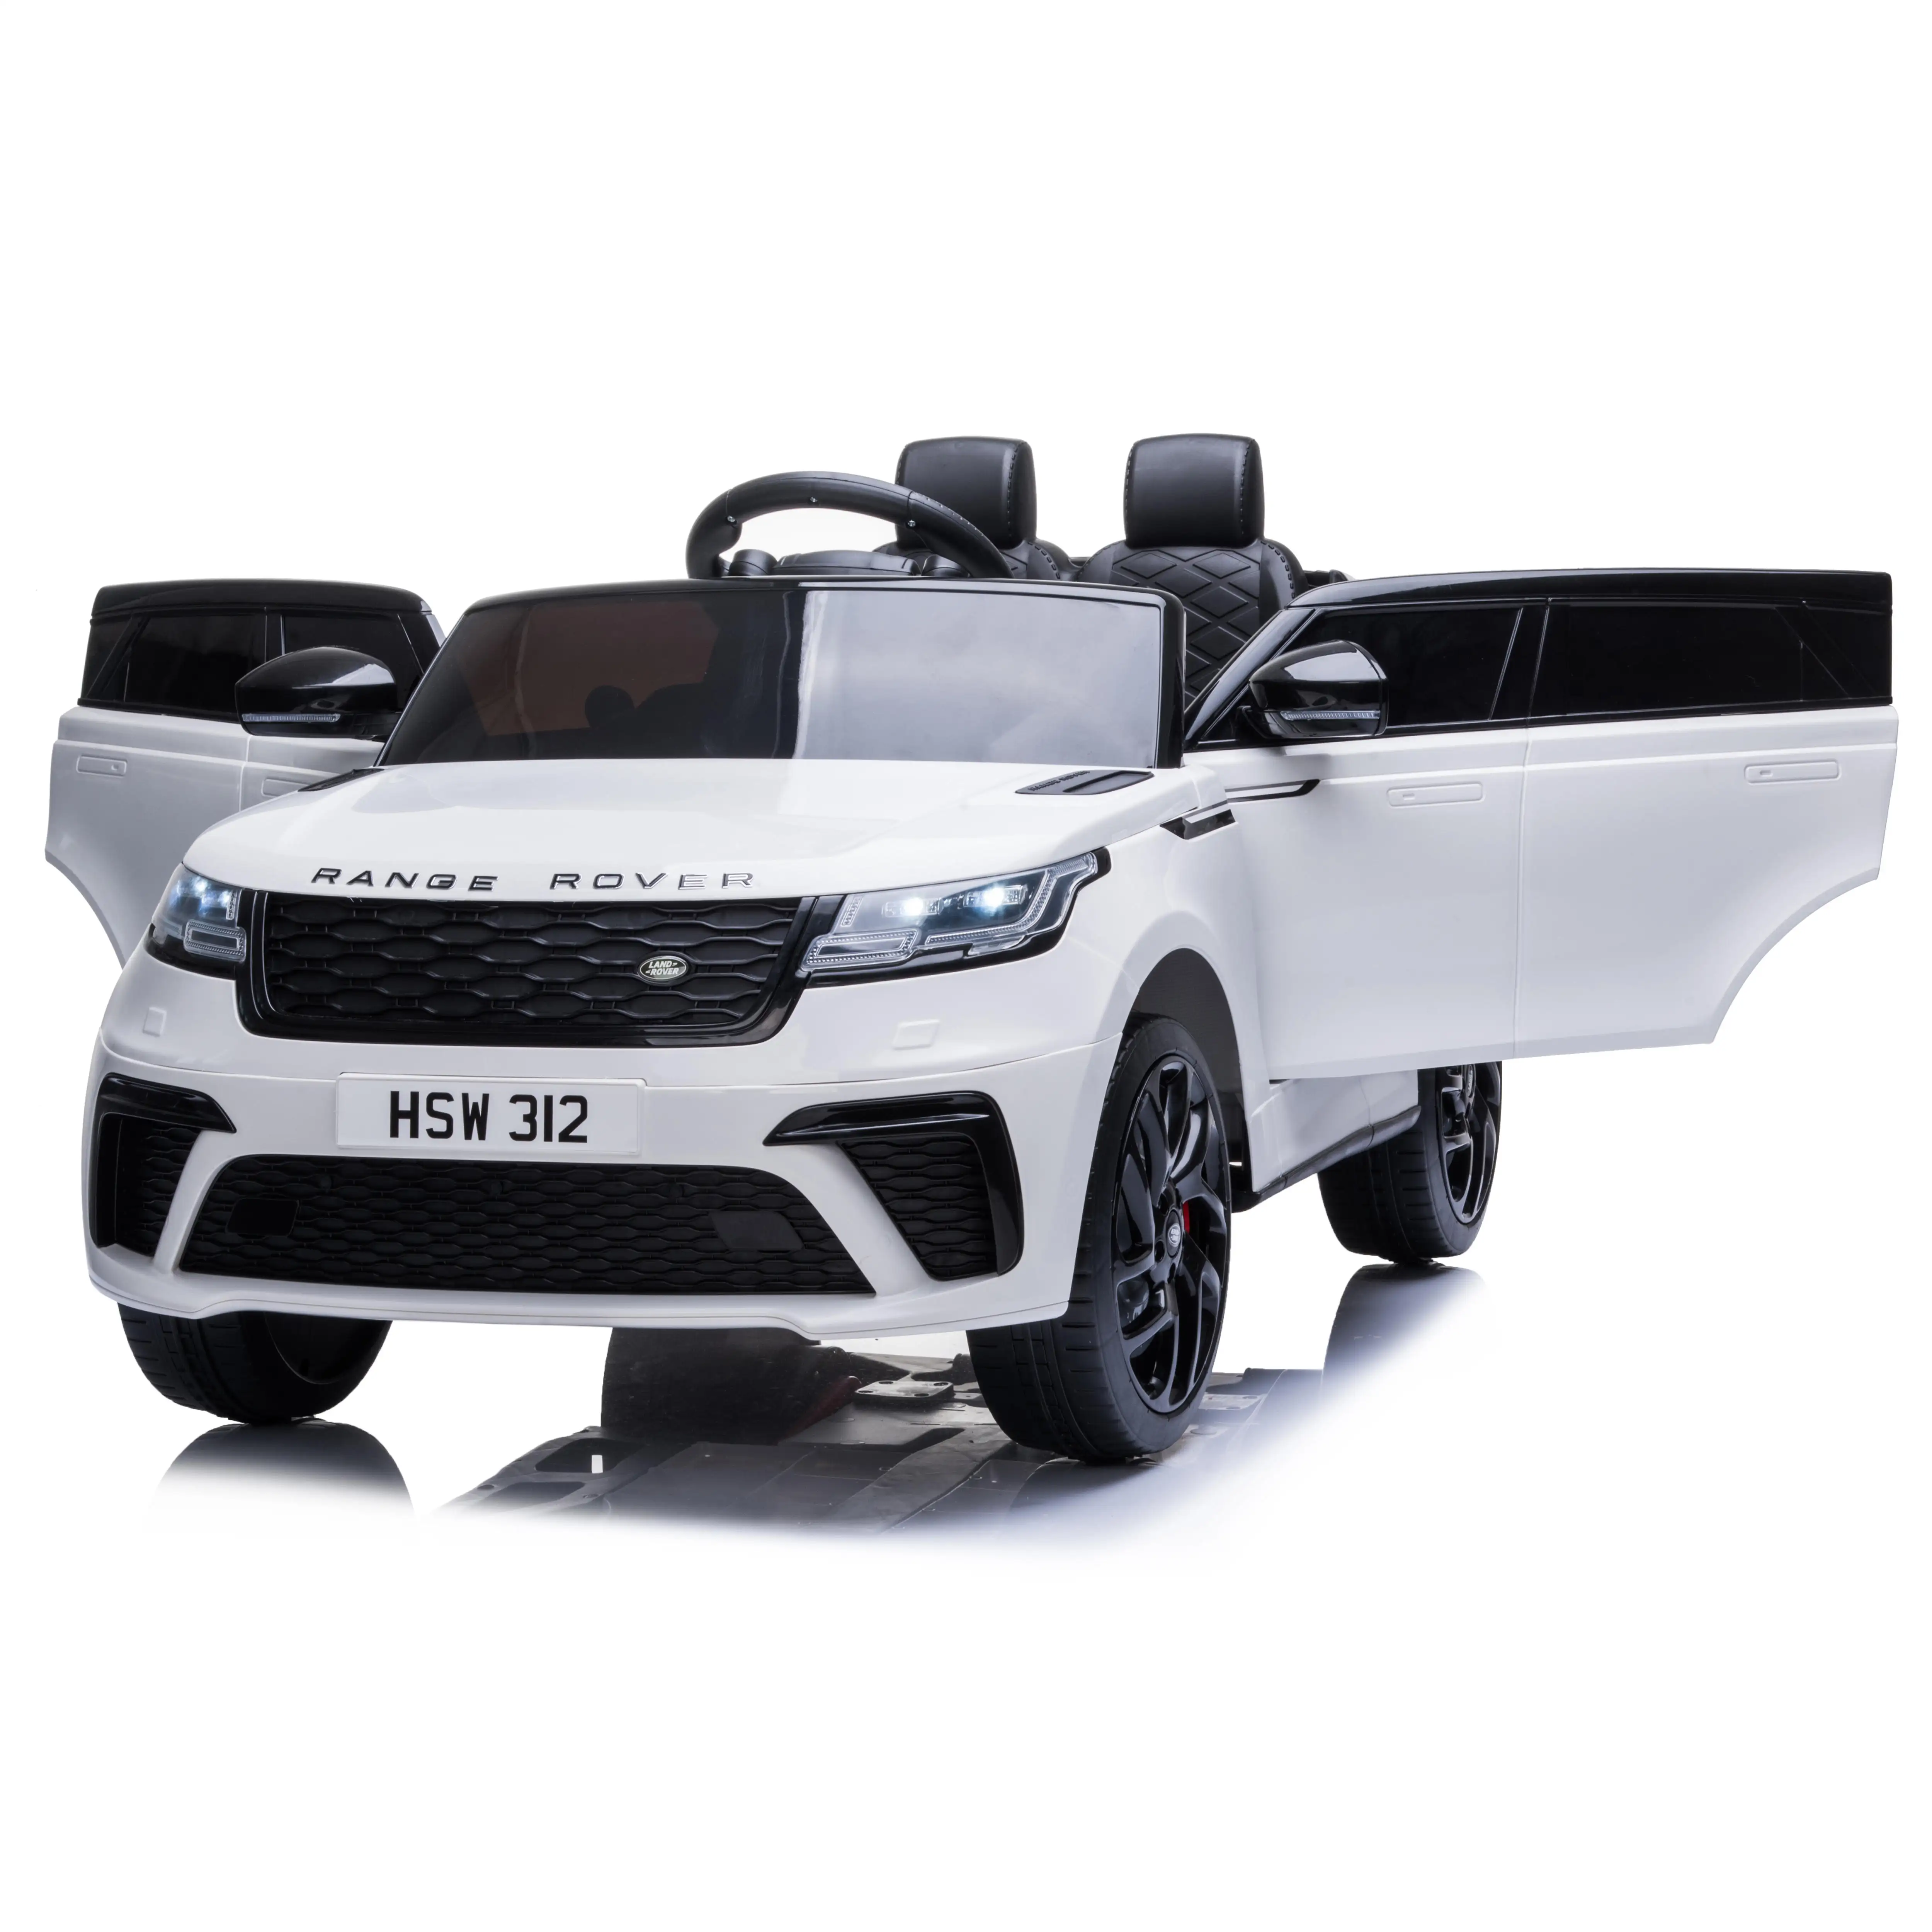 Baterai Listrik Range Rover Velar Berlisensi Anak Desain Baru 2021 Mobil Mainan Anak Remote Control